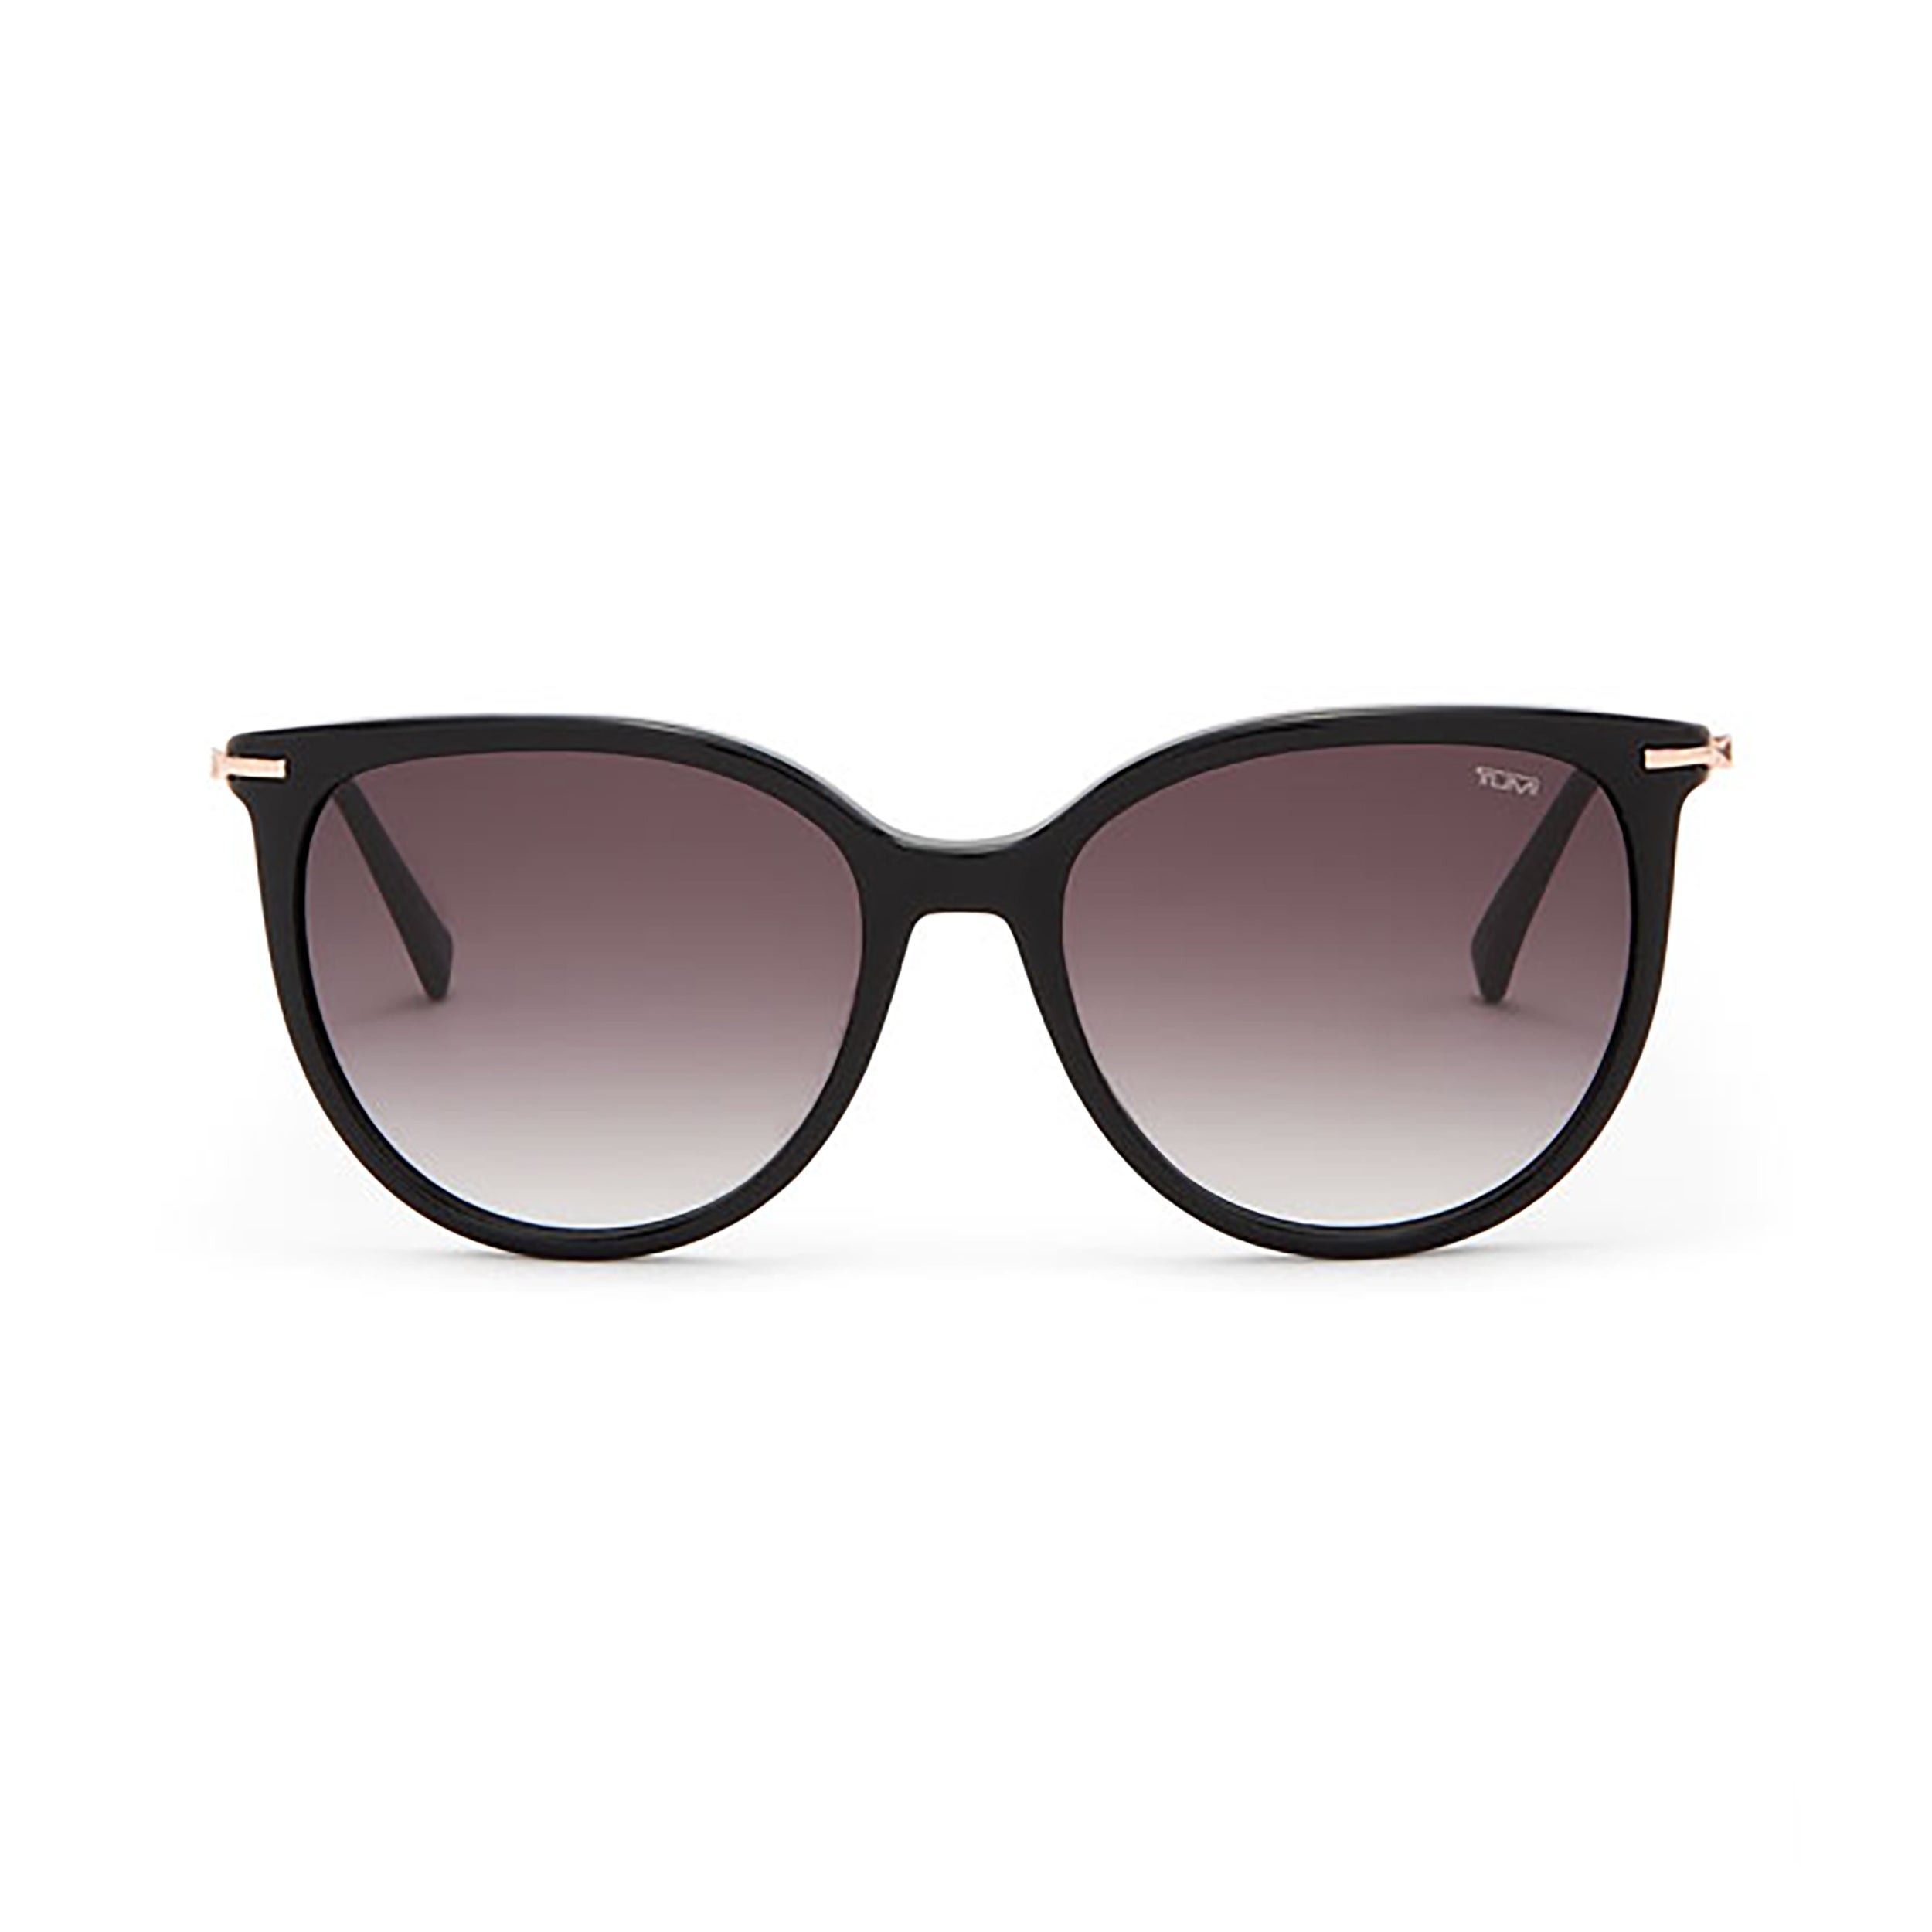 504 Gradient Sunglasses 54mm - Black